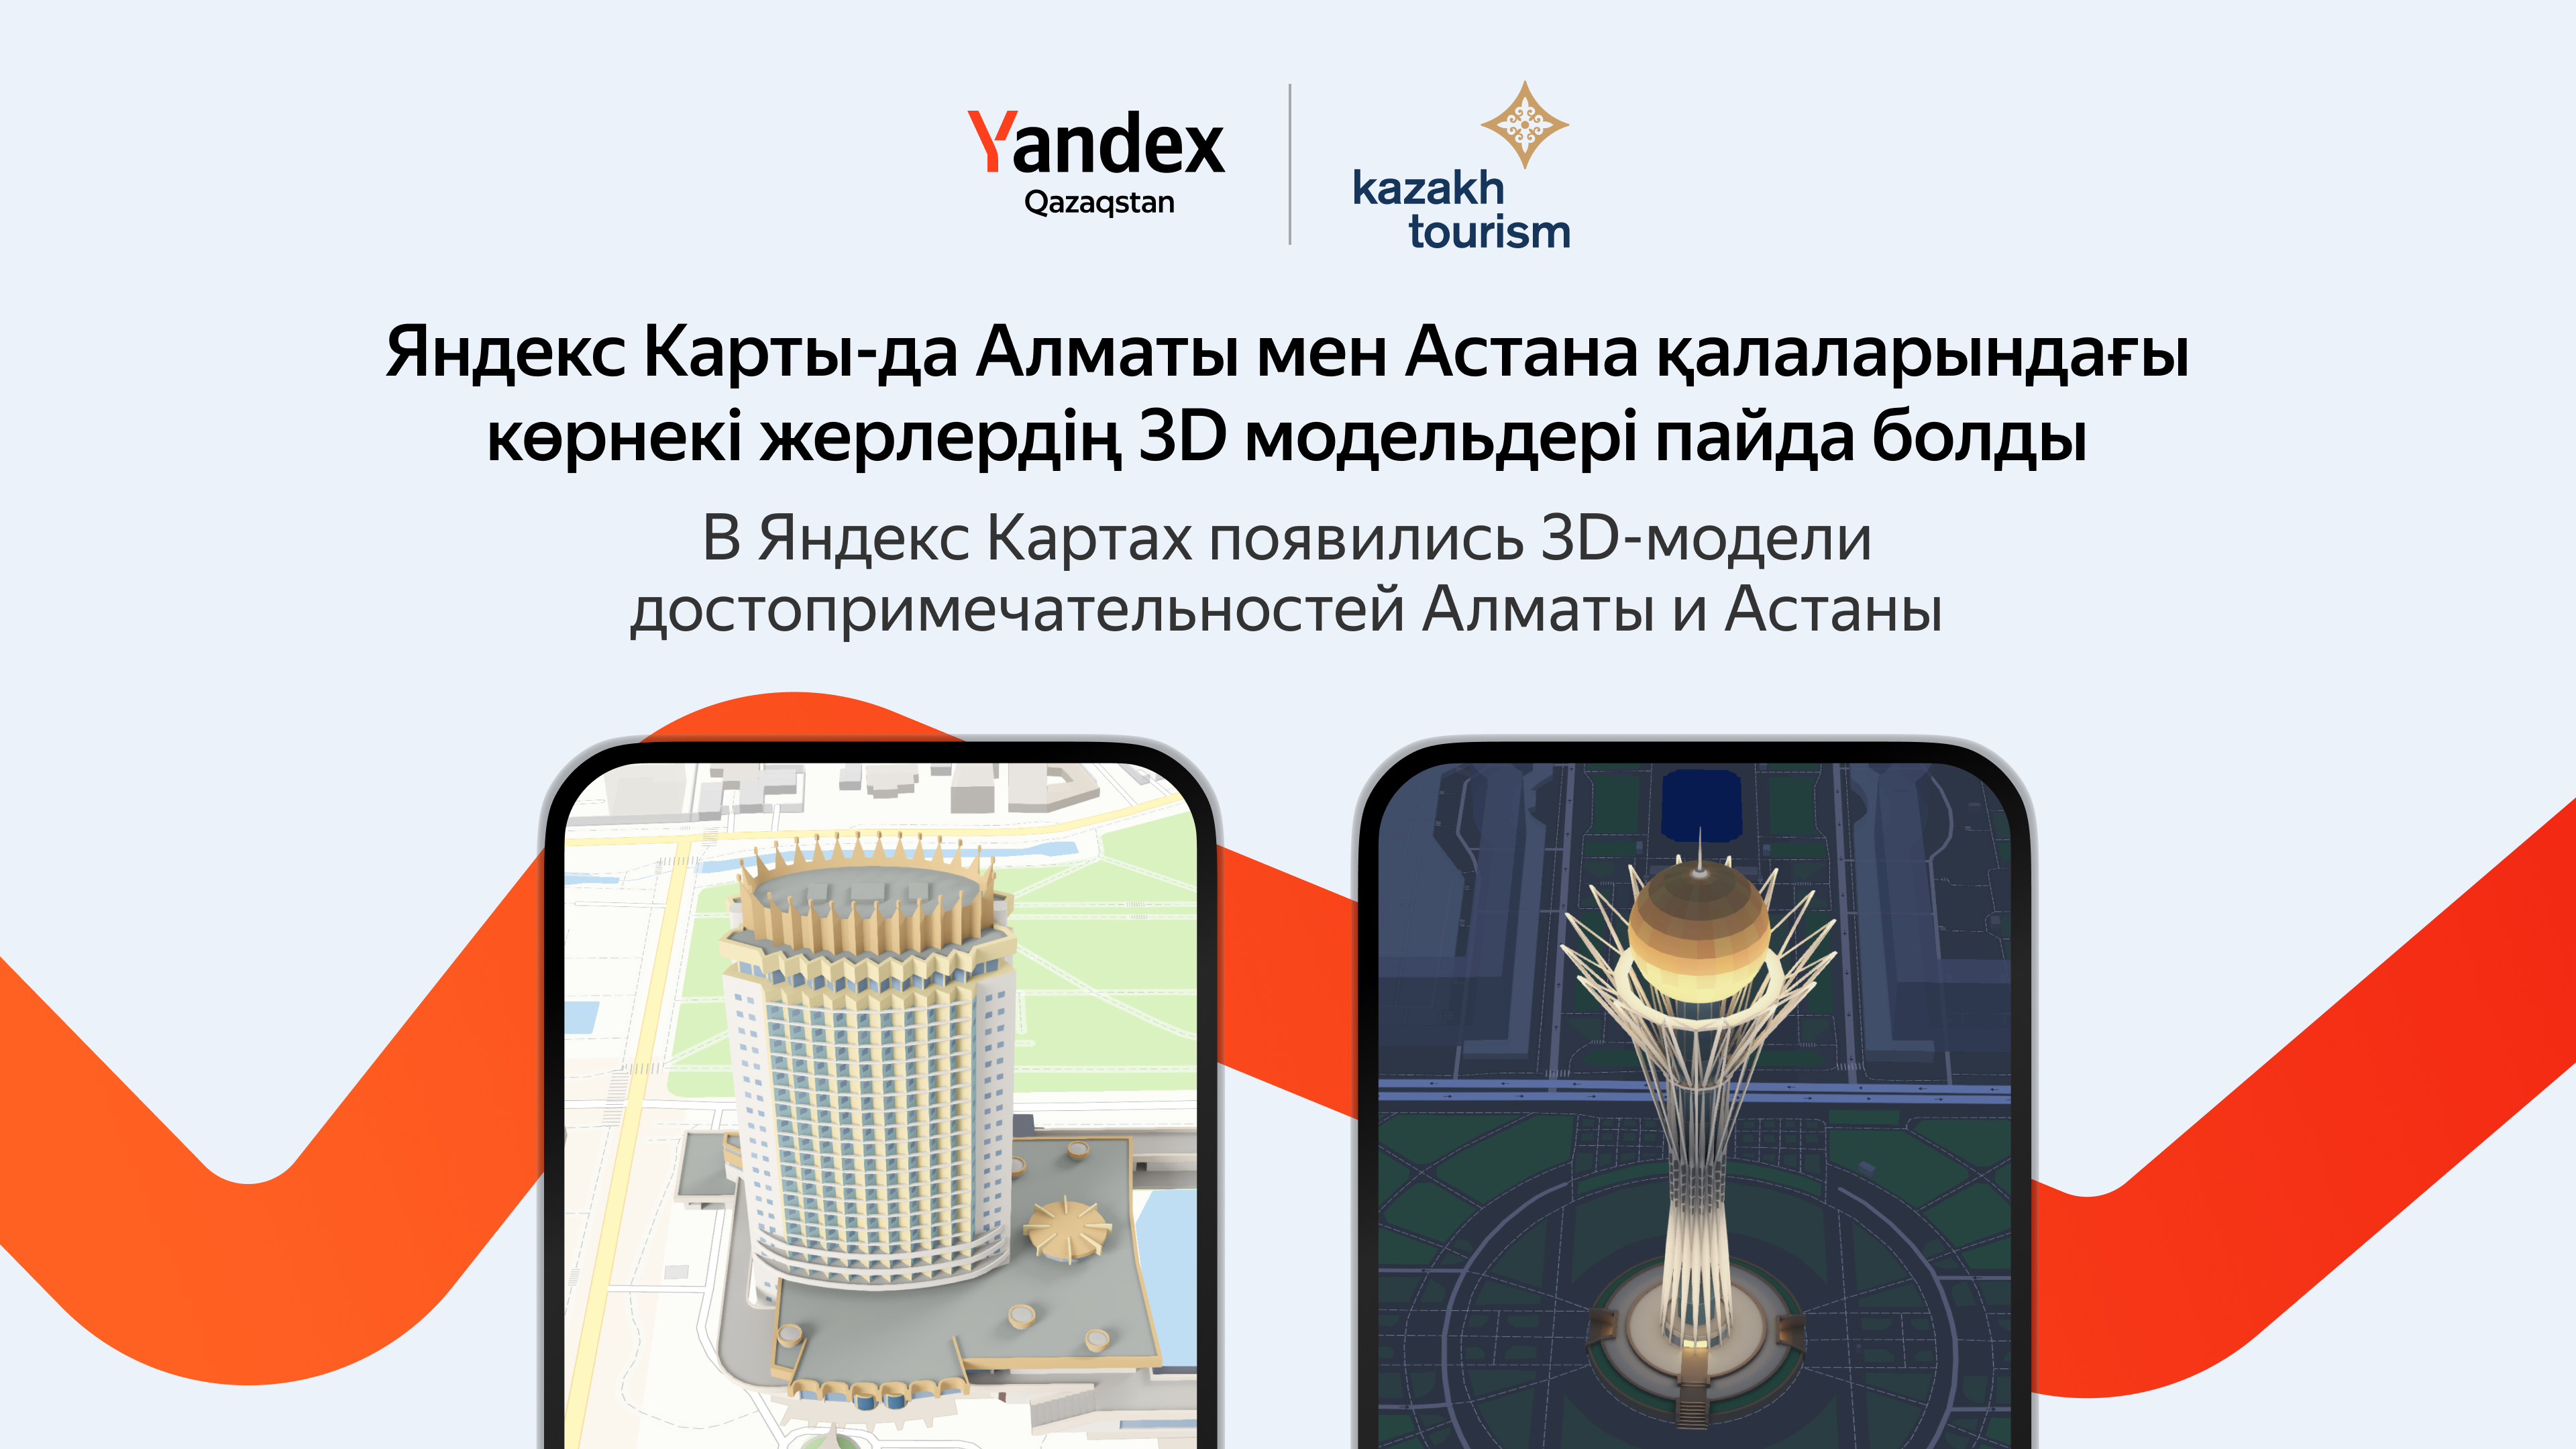 Yandex Qazaqstan в партнерстве с Kazakh Tourism добавил в Карты 3D-достопримечательности Казахстана